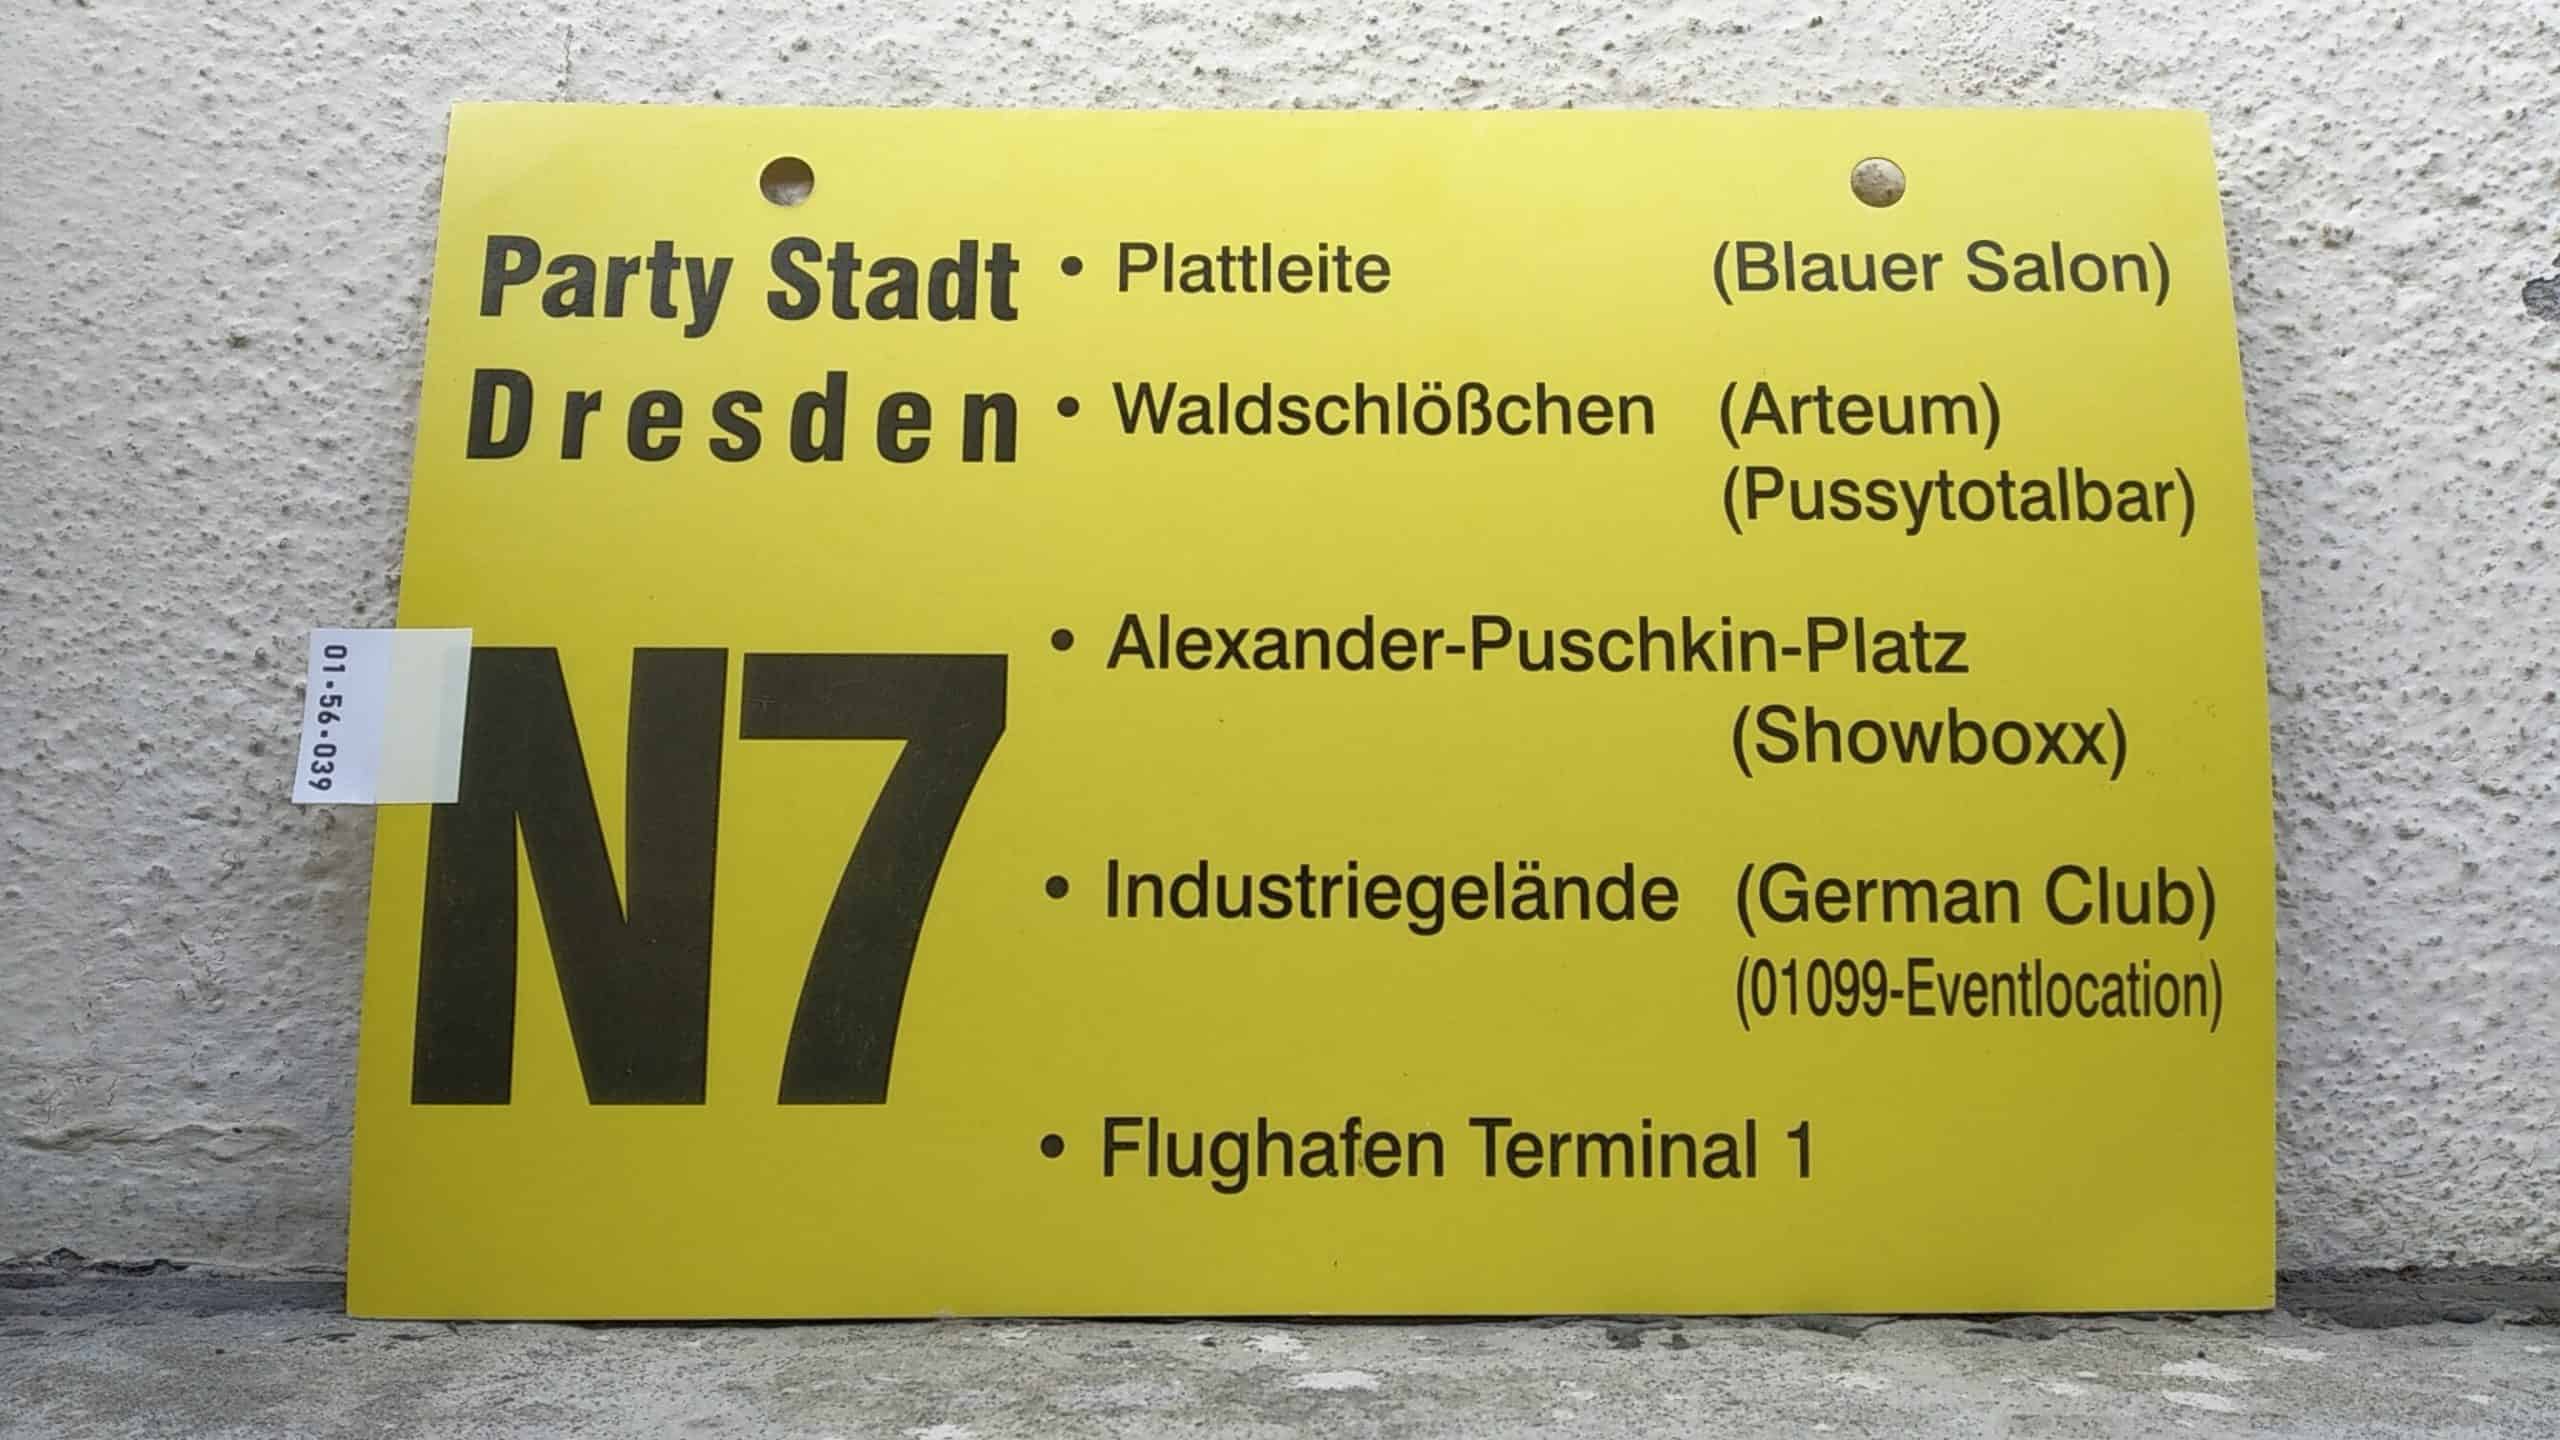 Ein seltenes Bus-Linienschild aus Dresden, anläßlich Party Stadt Dresden N7 [Plattleite Blauer Salon - Flughafen Terminal 1]